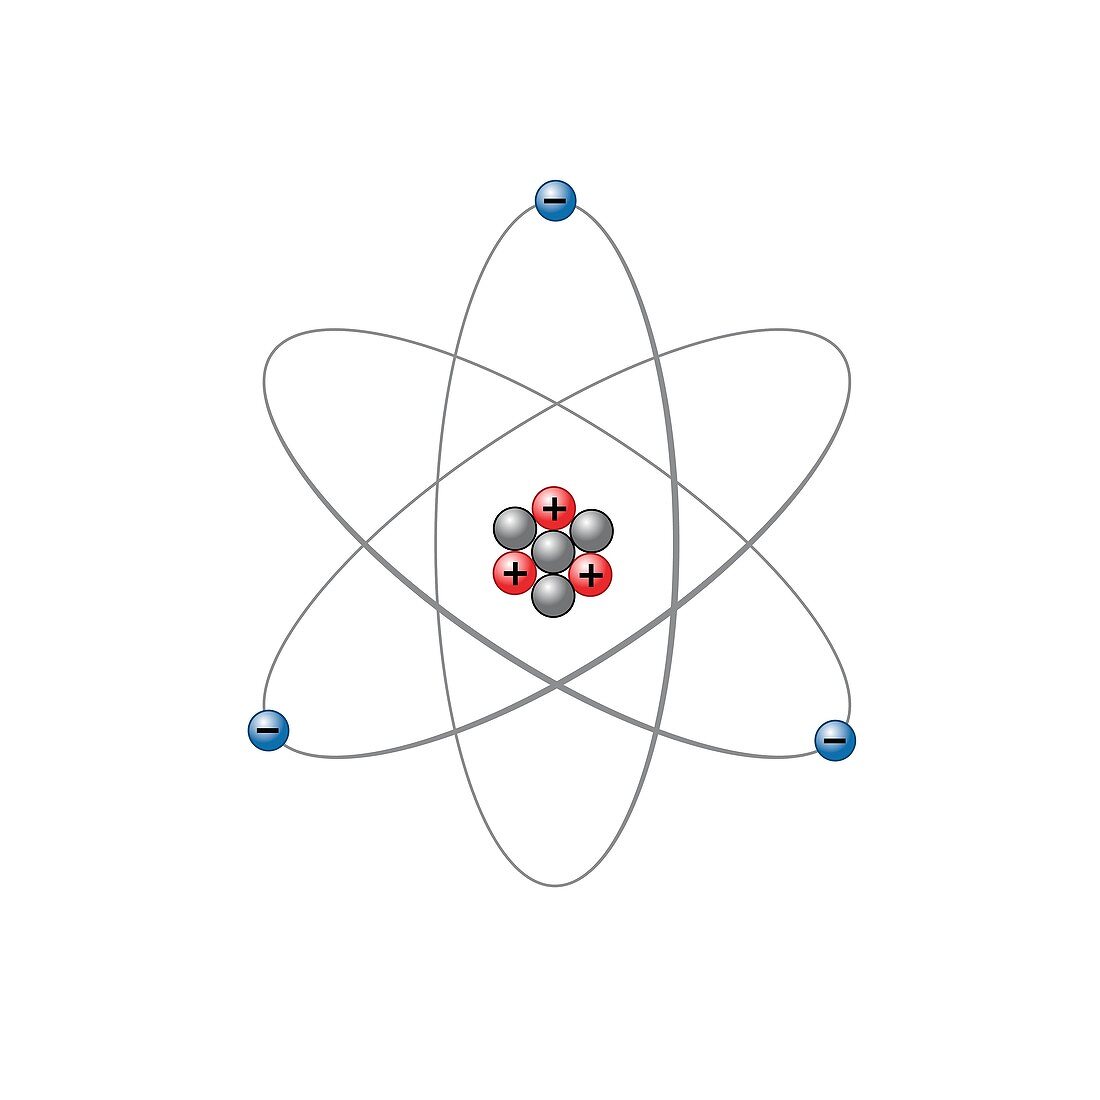 Lithium atom, illustration